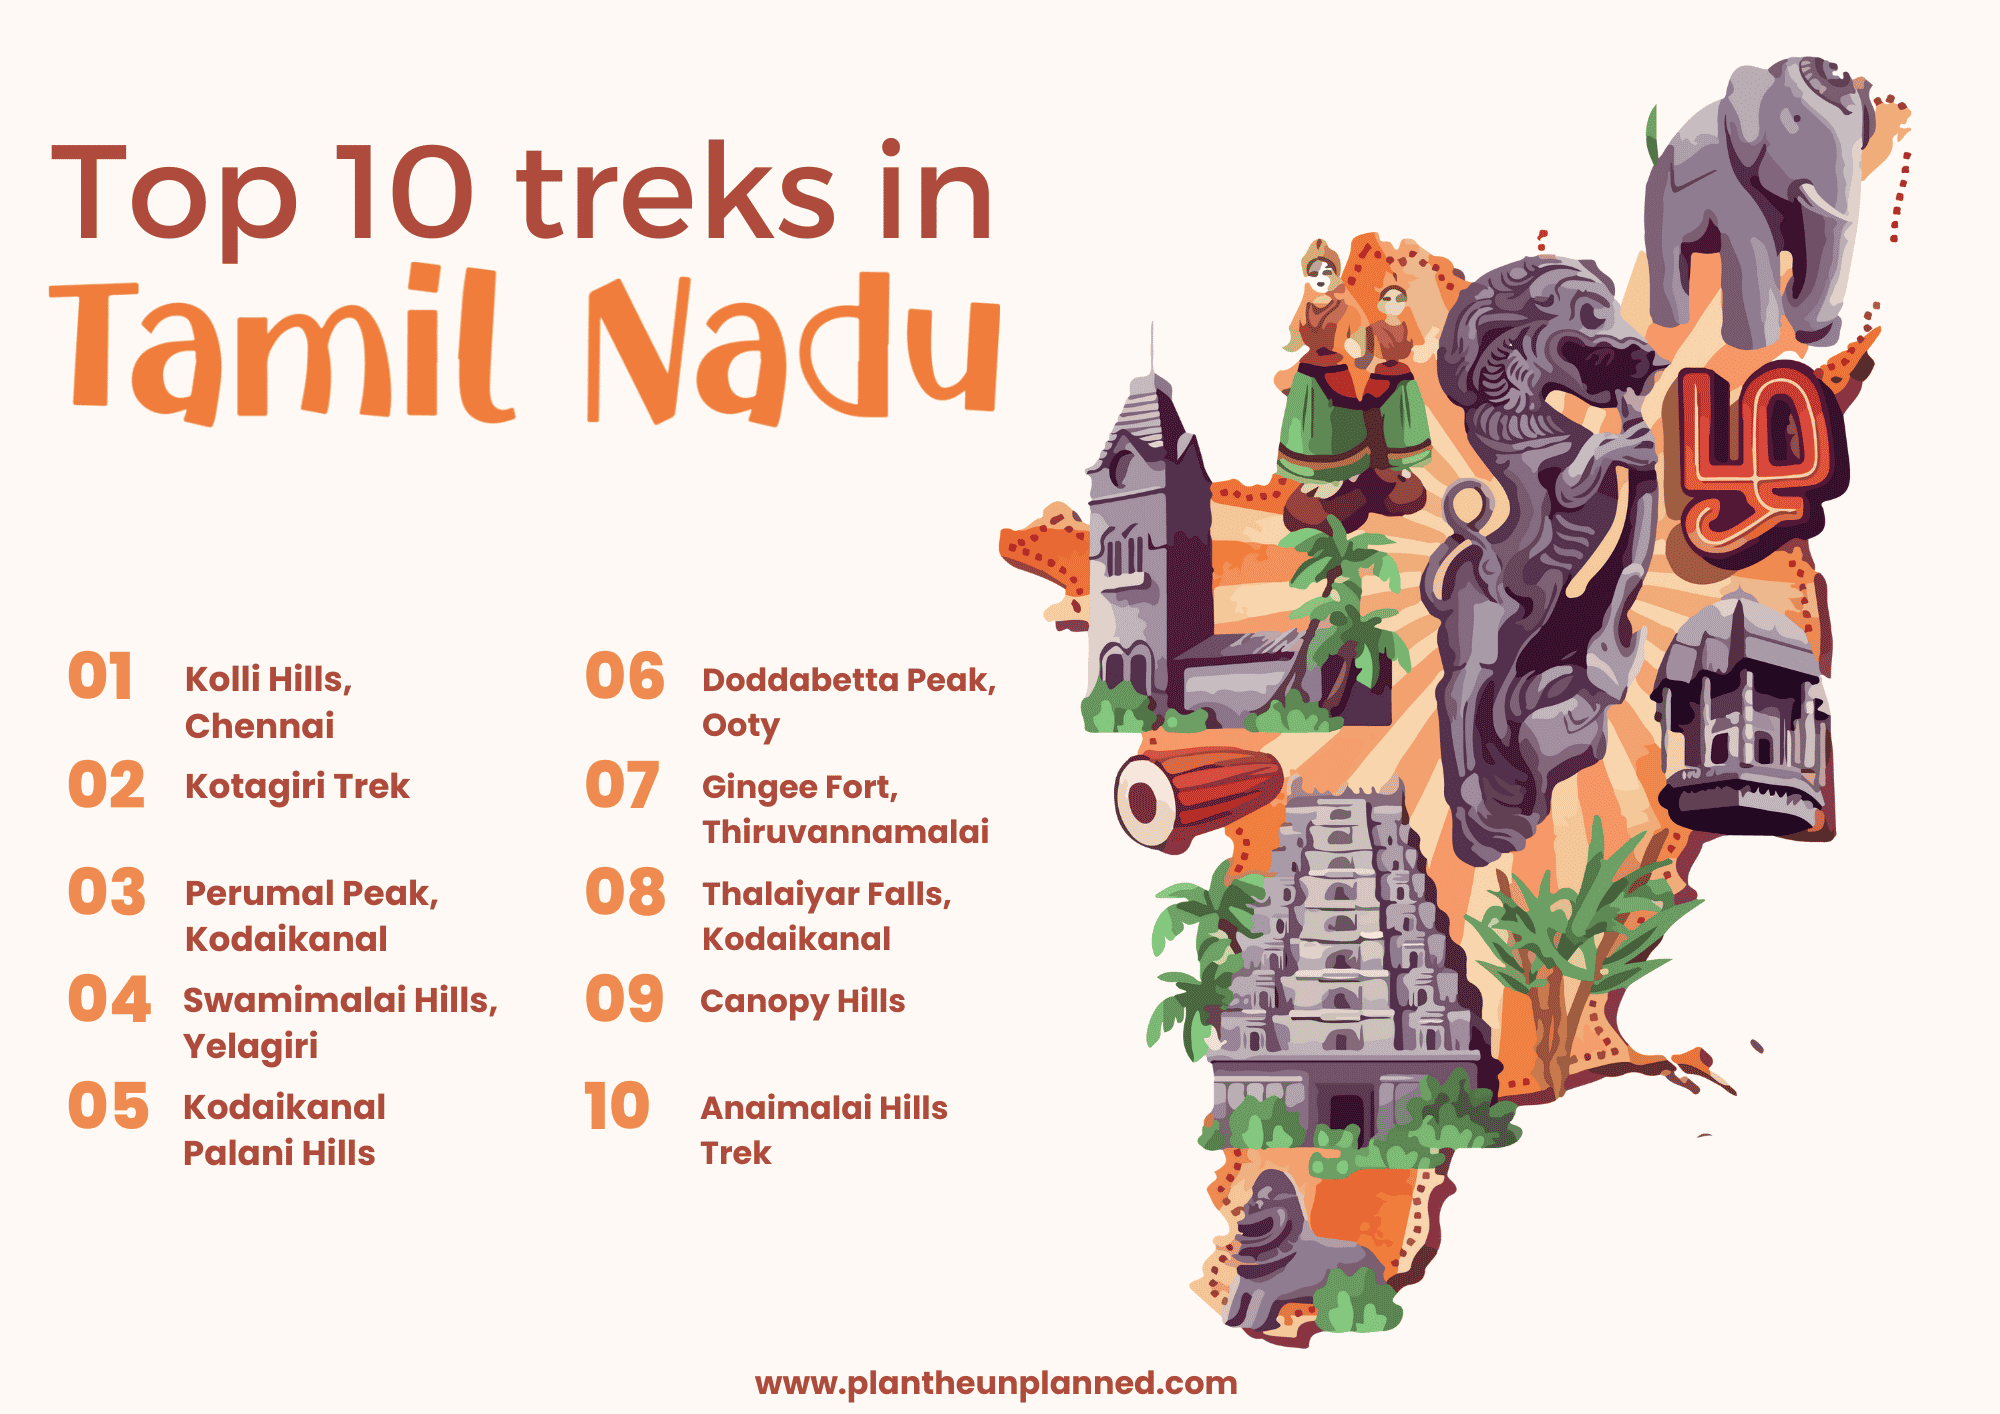 Plan the Unplanned | Top 10 treks in Tamil Nadu